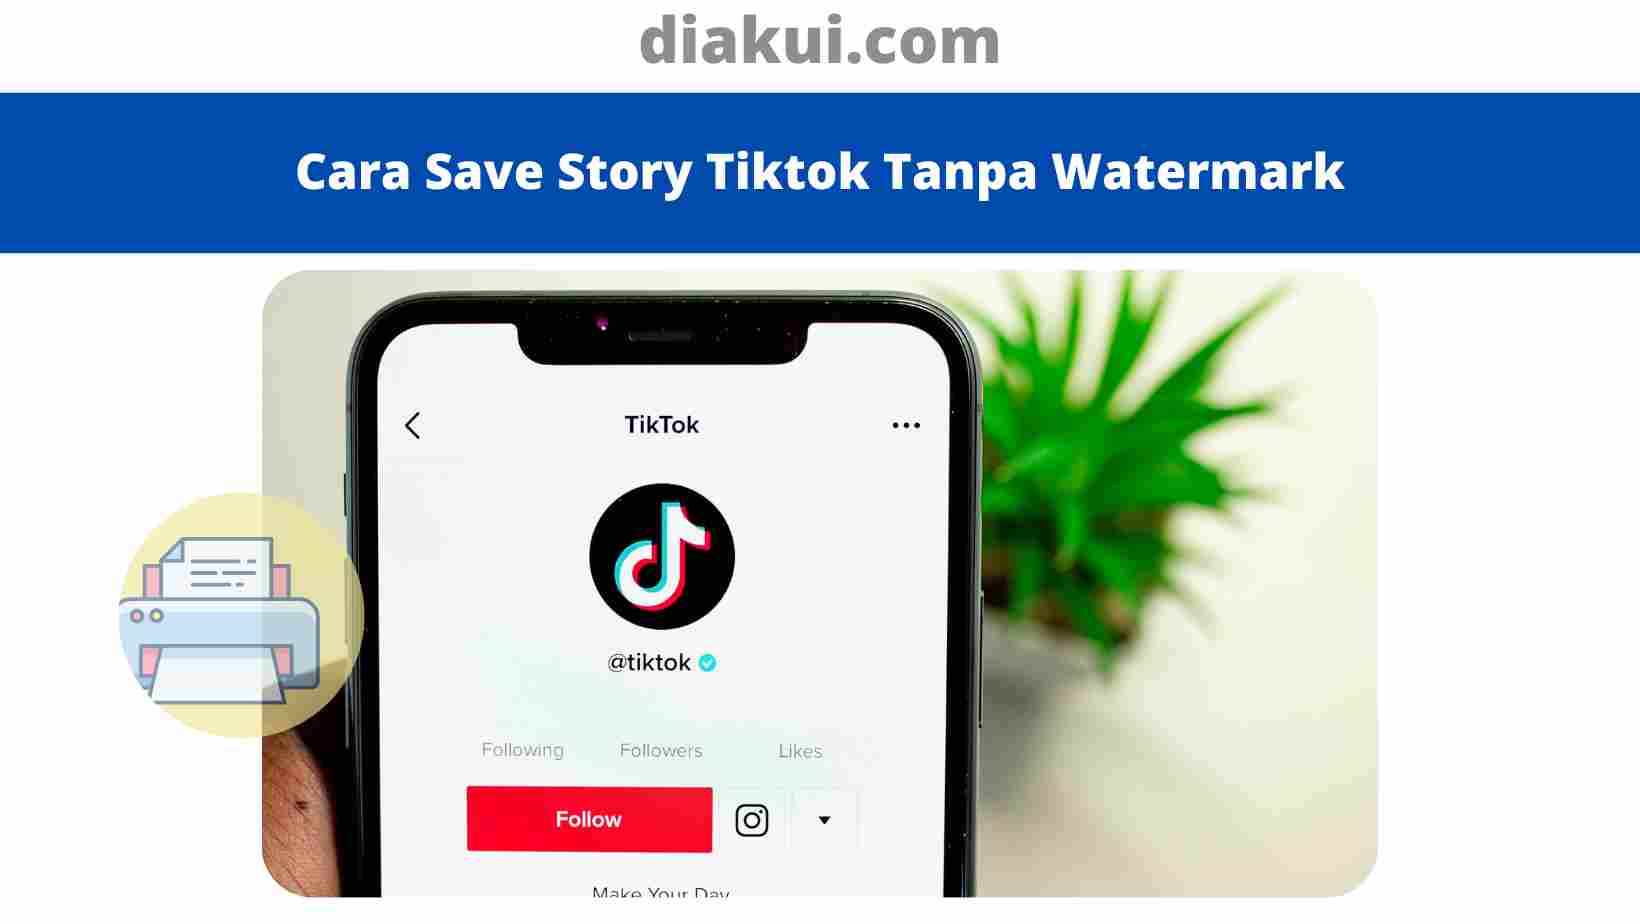 Cara Save Story Tiktok Tanpa Watermark